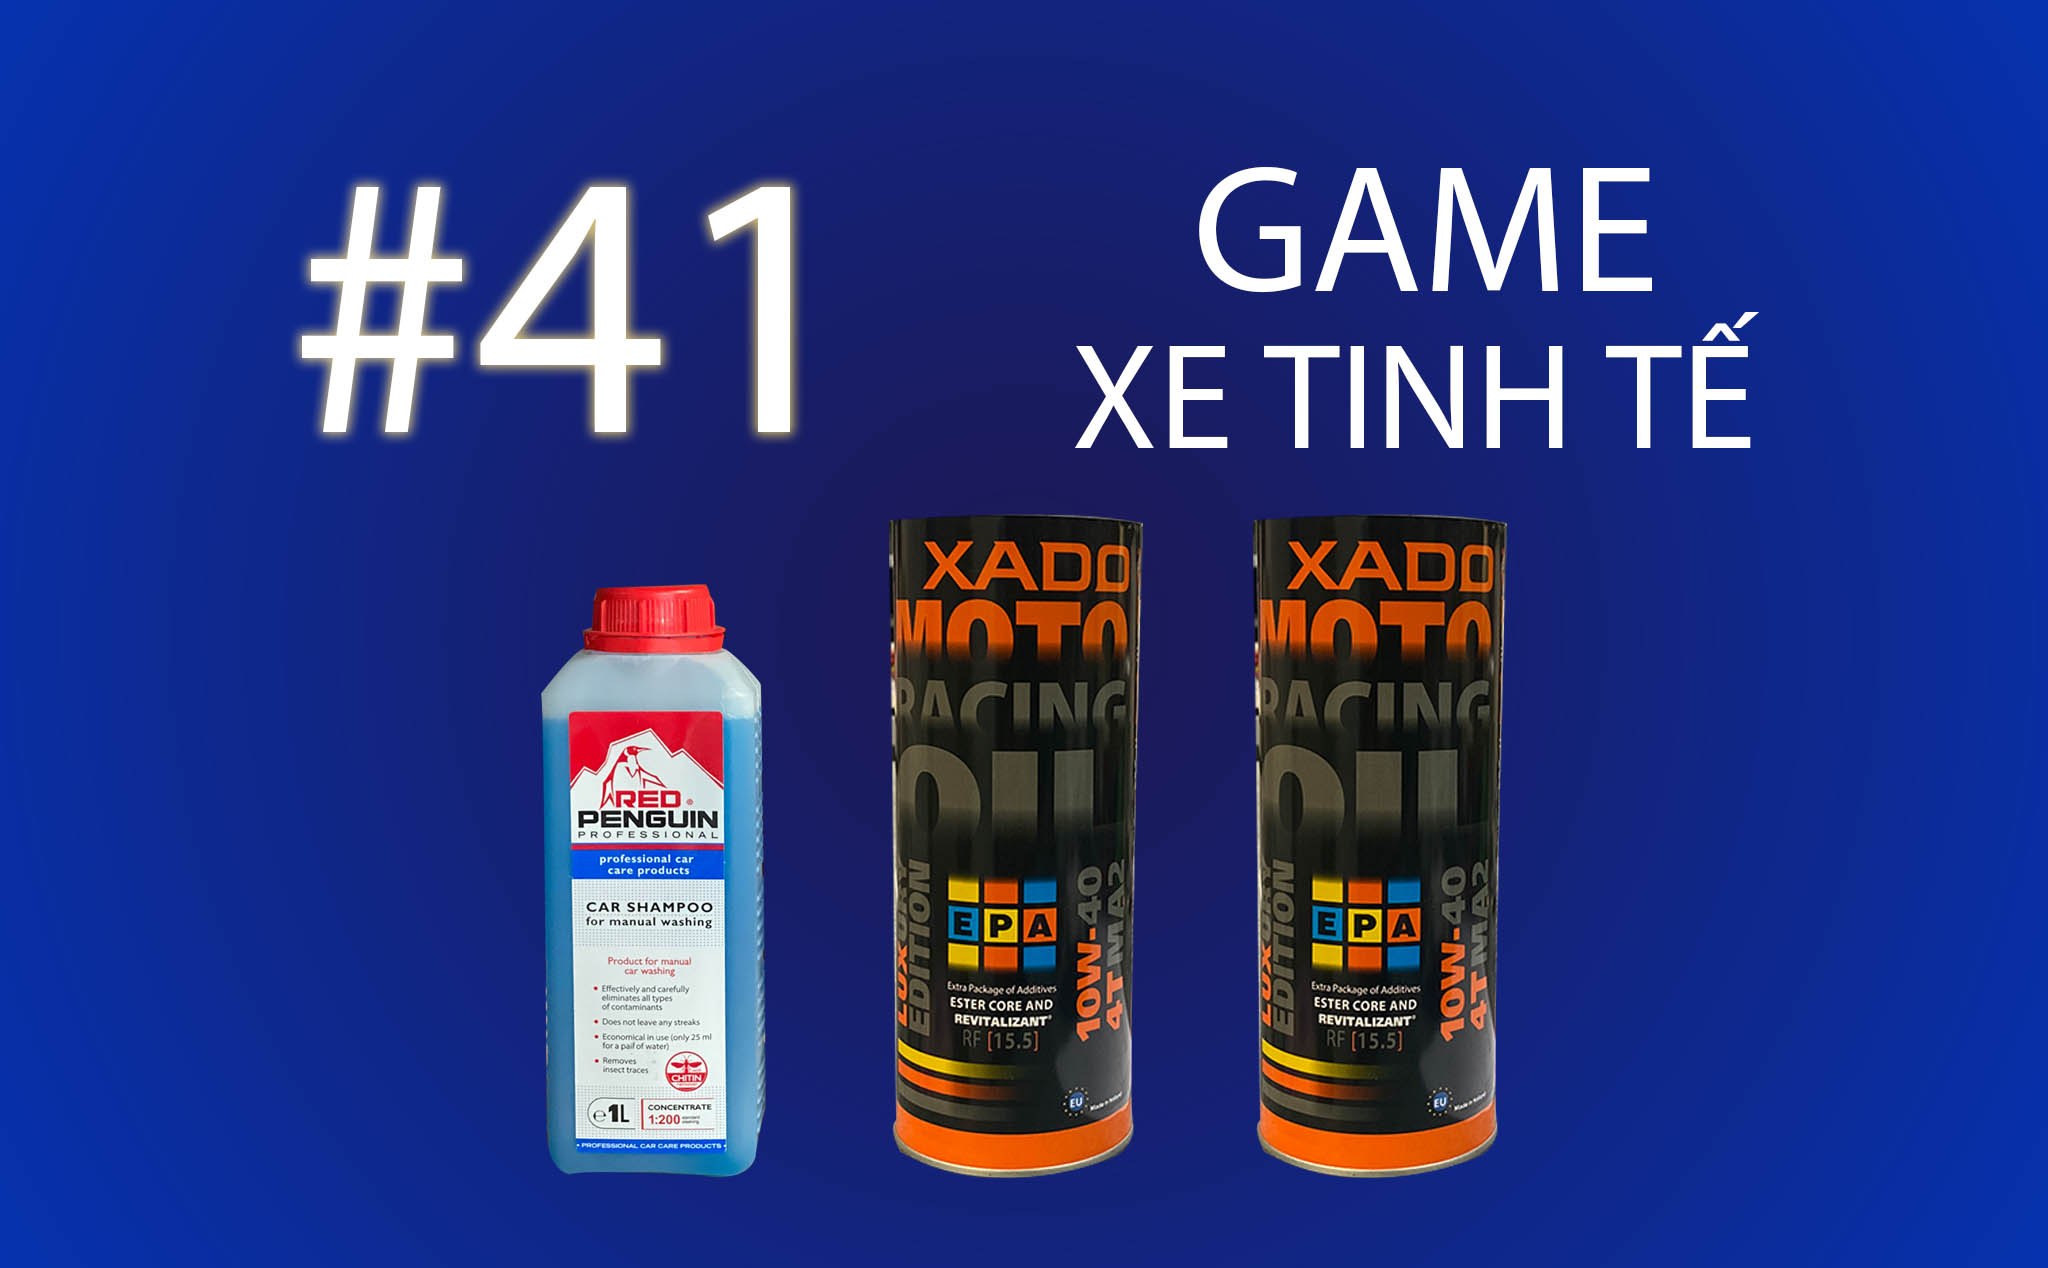 Game Xe Tinh tế #41: tặng 2 bình nhớt XADO và 1 chai nước rửa xe Penguin